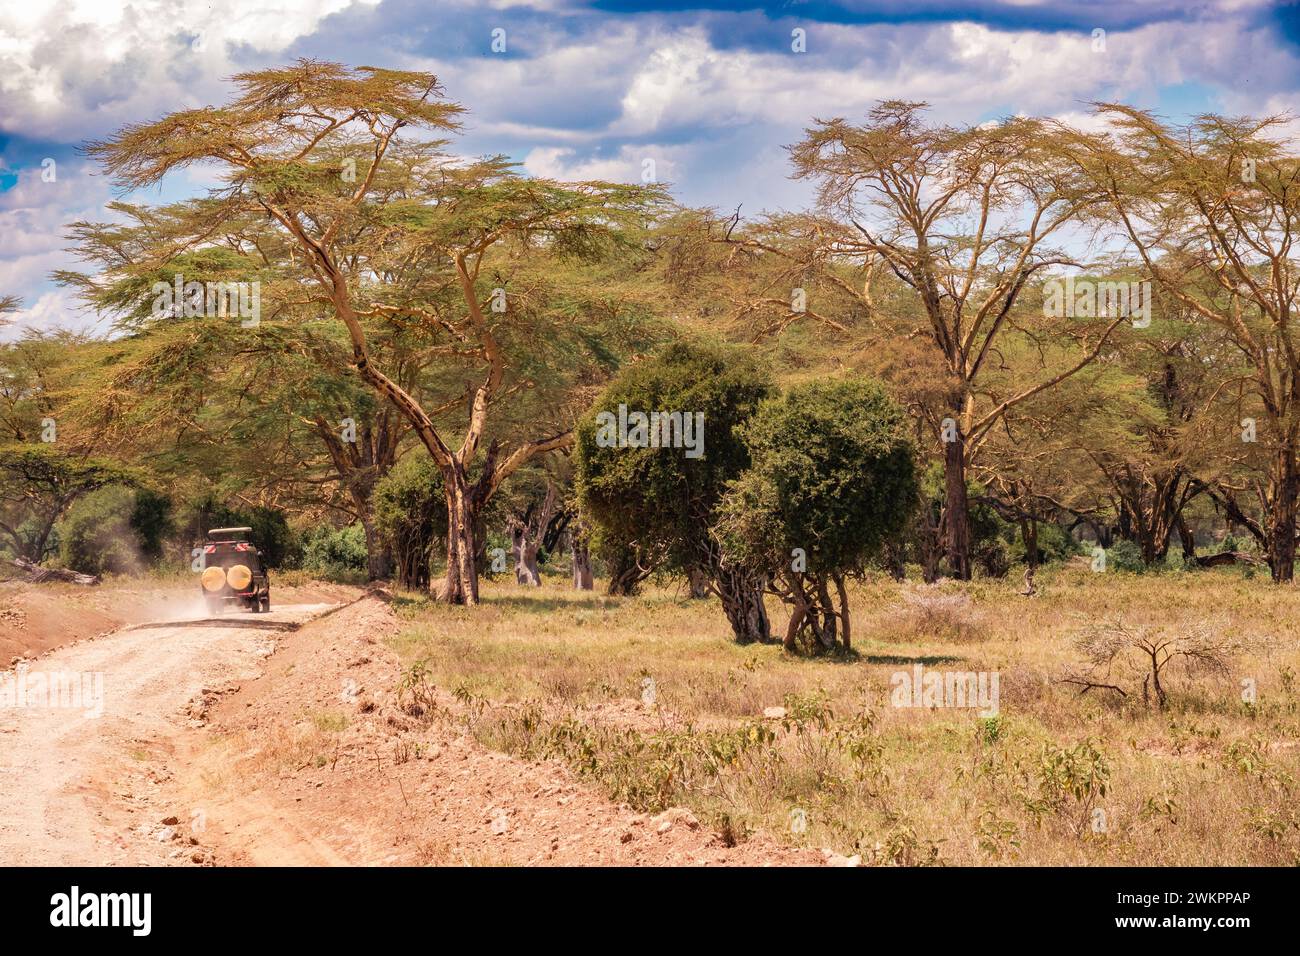 Safari van sur un chemin de terre sur les rives du lac Nakuru dans le parc national du lac Nakuru au Kenya Banque D'Images